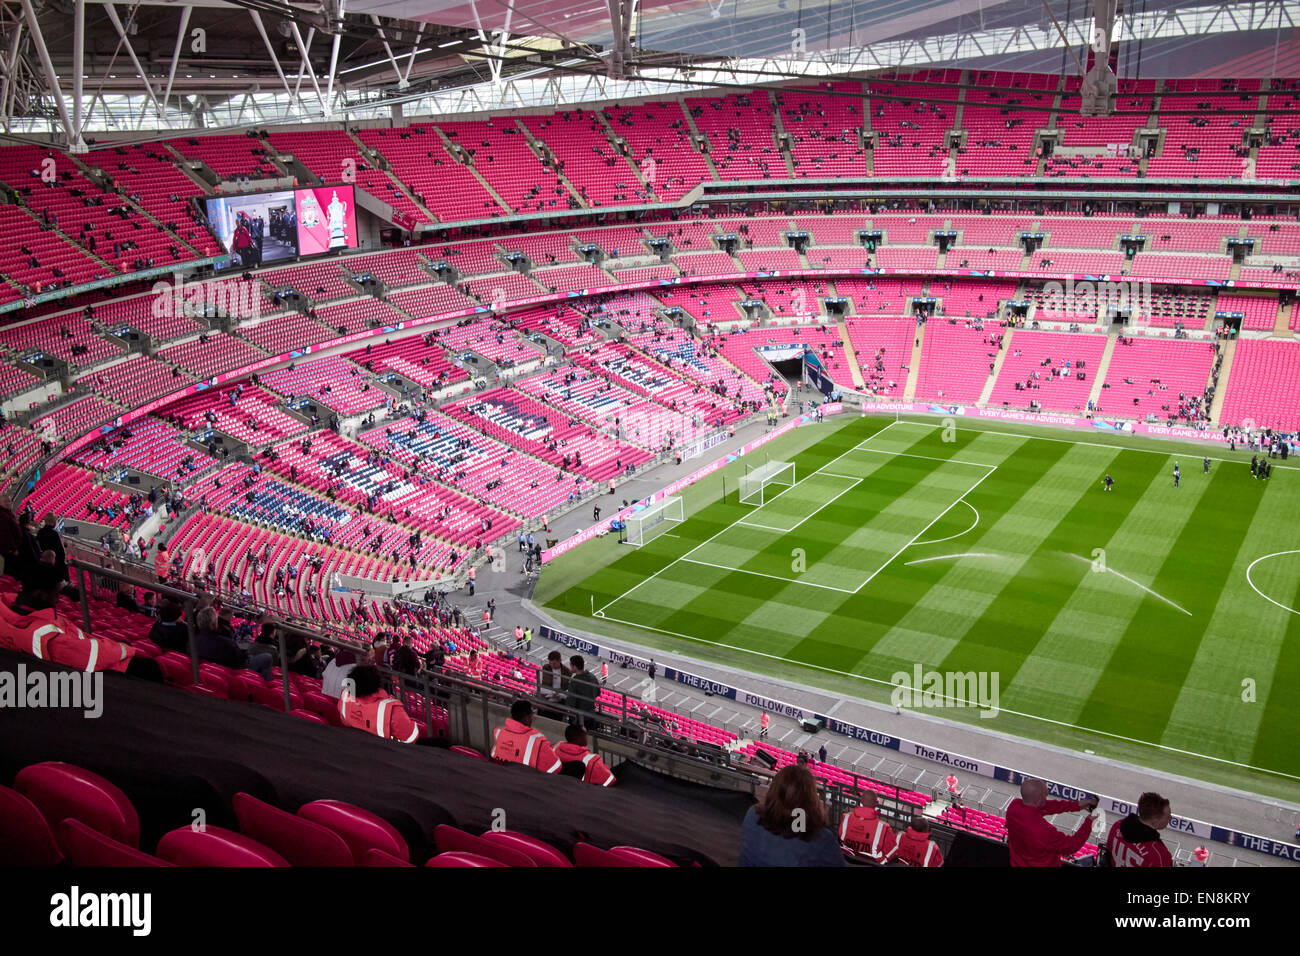 interior of Wembley stadium on match day London UK Stock Photo